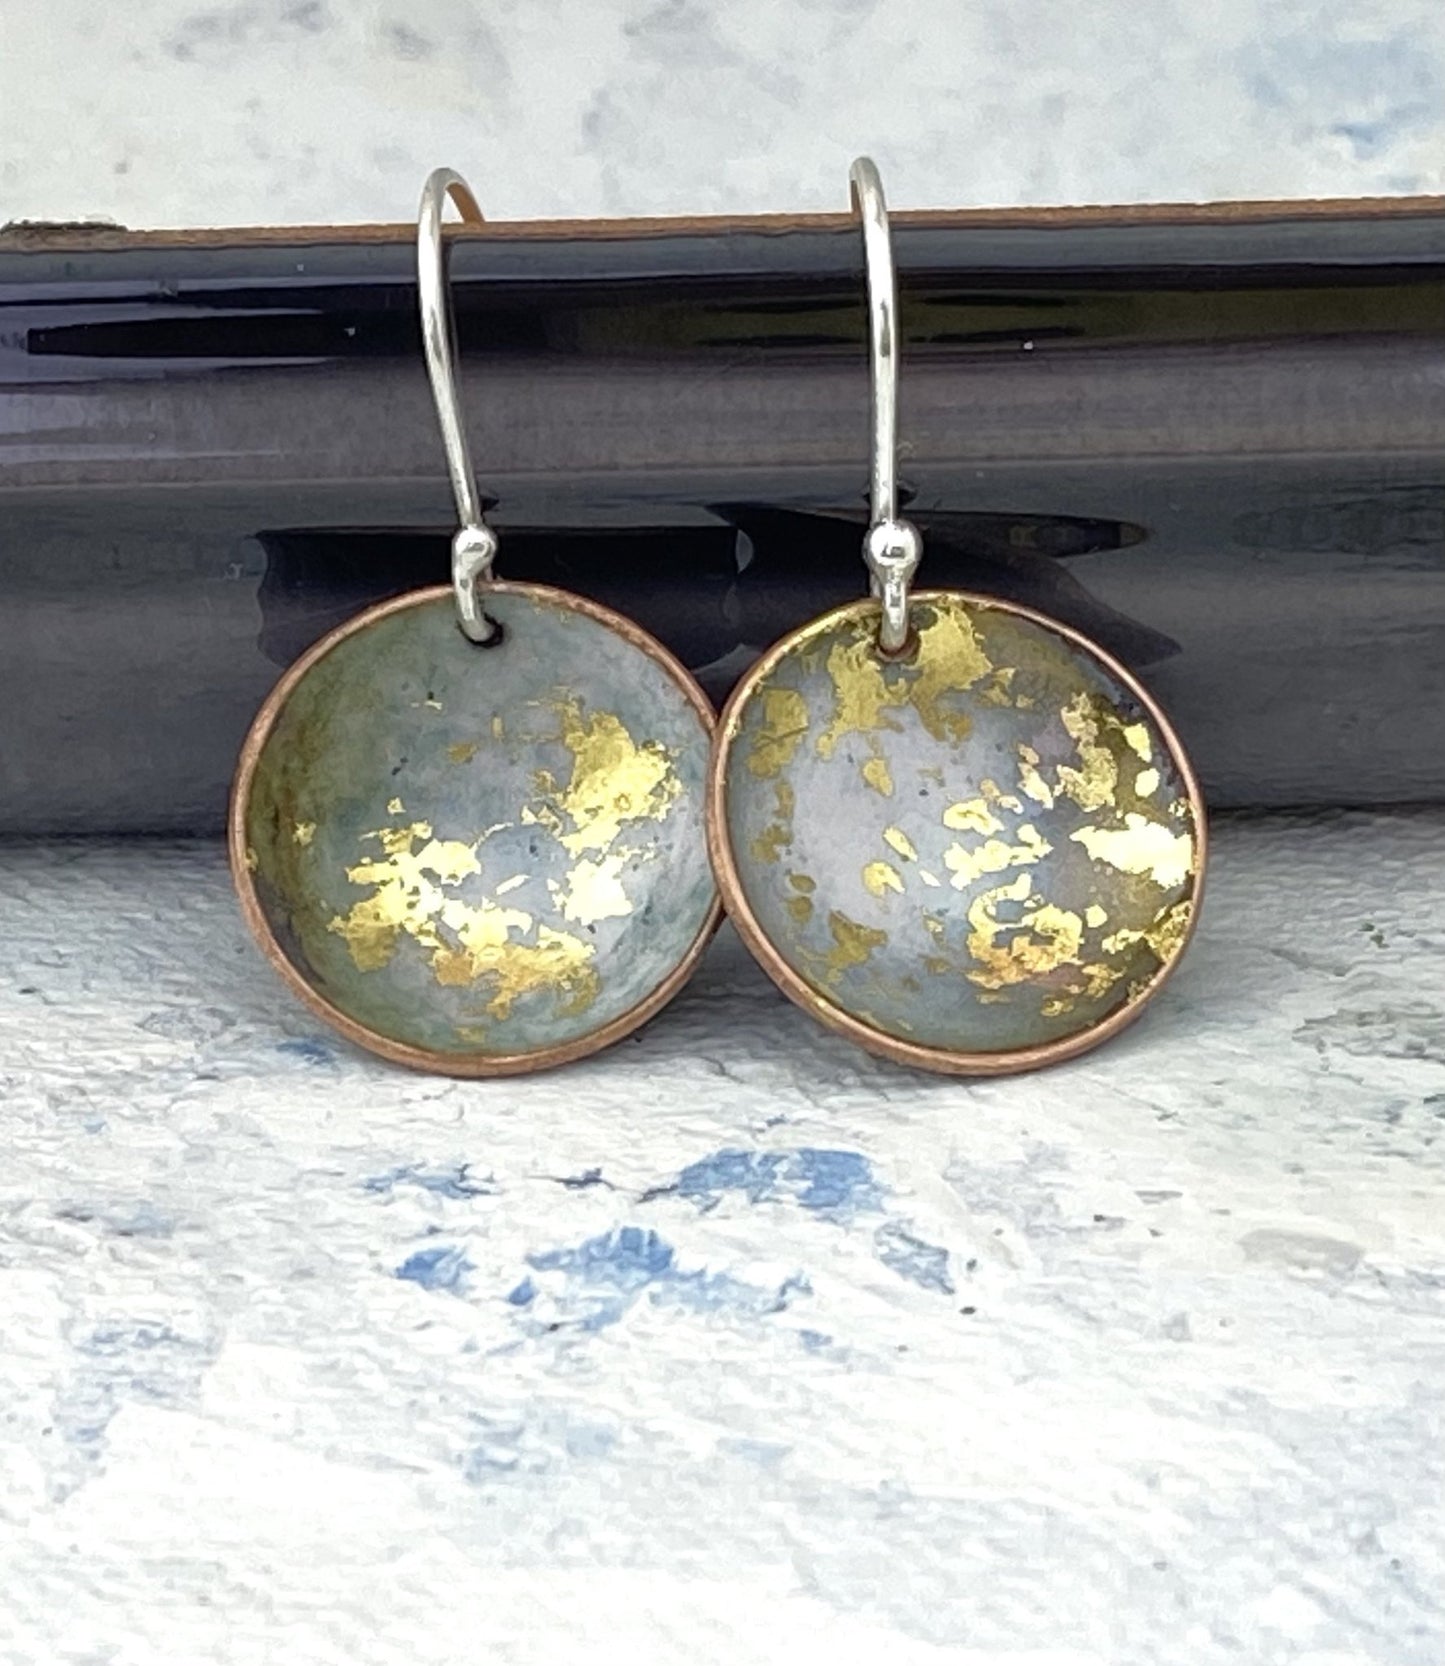 Enamel 'bowl' drop earrings. Little copper bowls filled with enamel on sterling silver wires. - Katie Johnston Jewellery